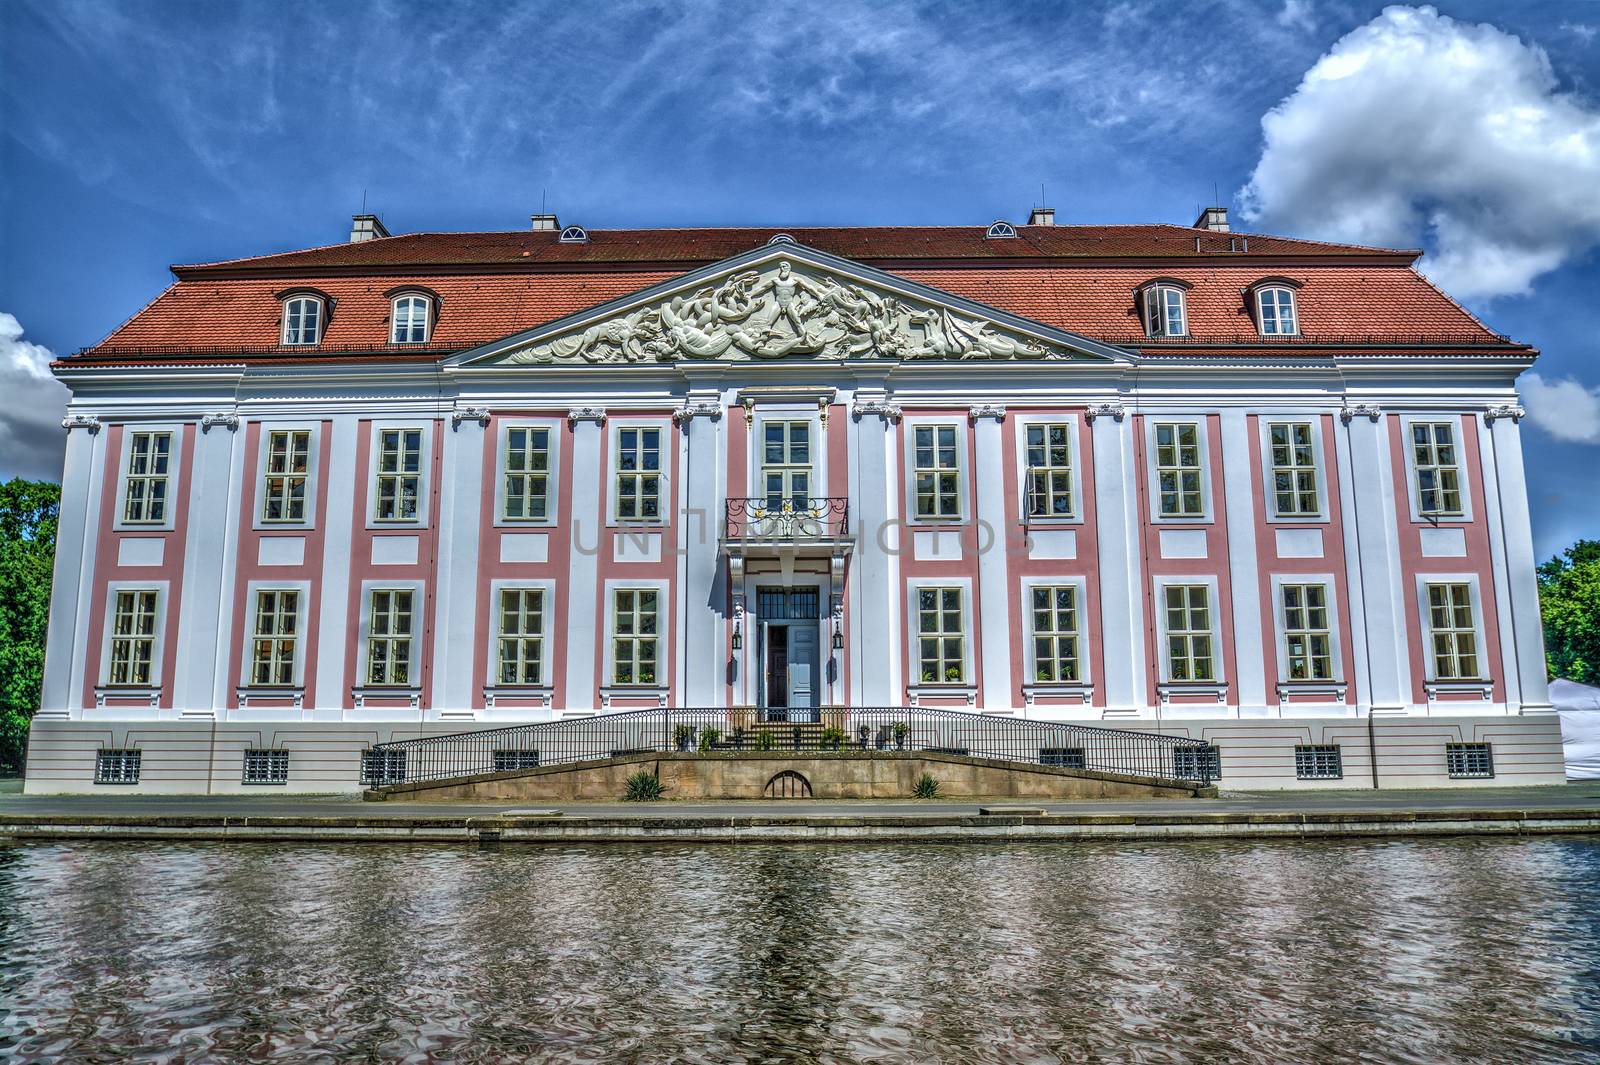 Baroque styled Friedrichsfelde Palace in Berlin, Germany by nickfox